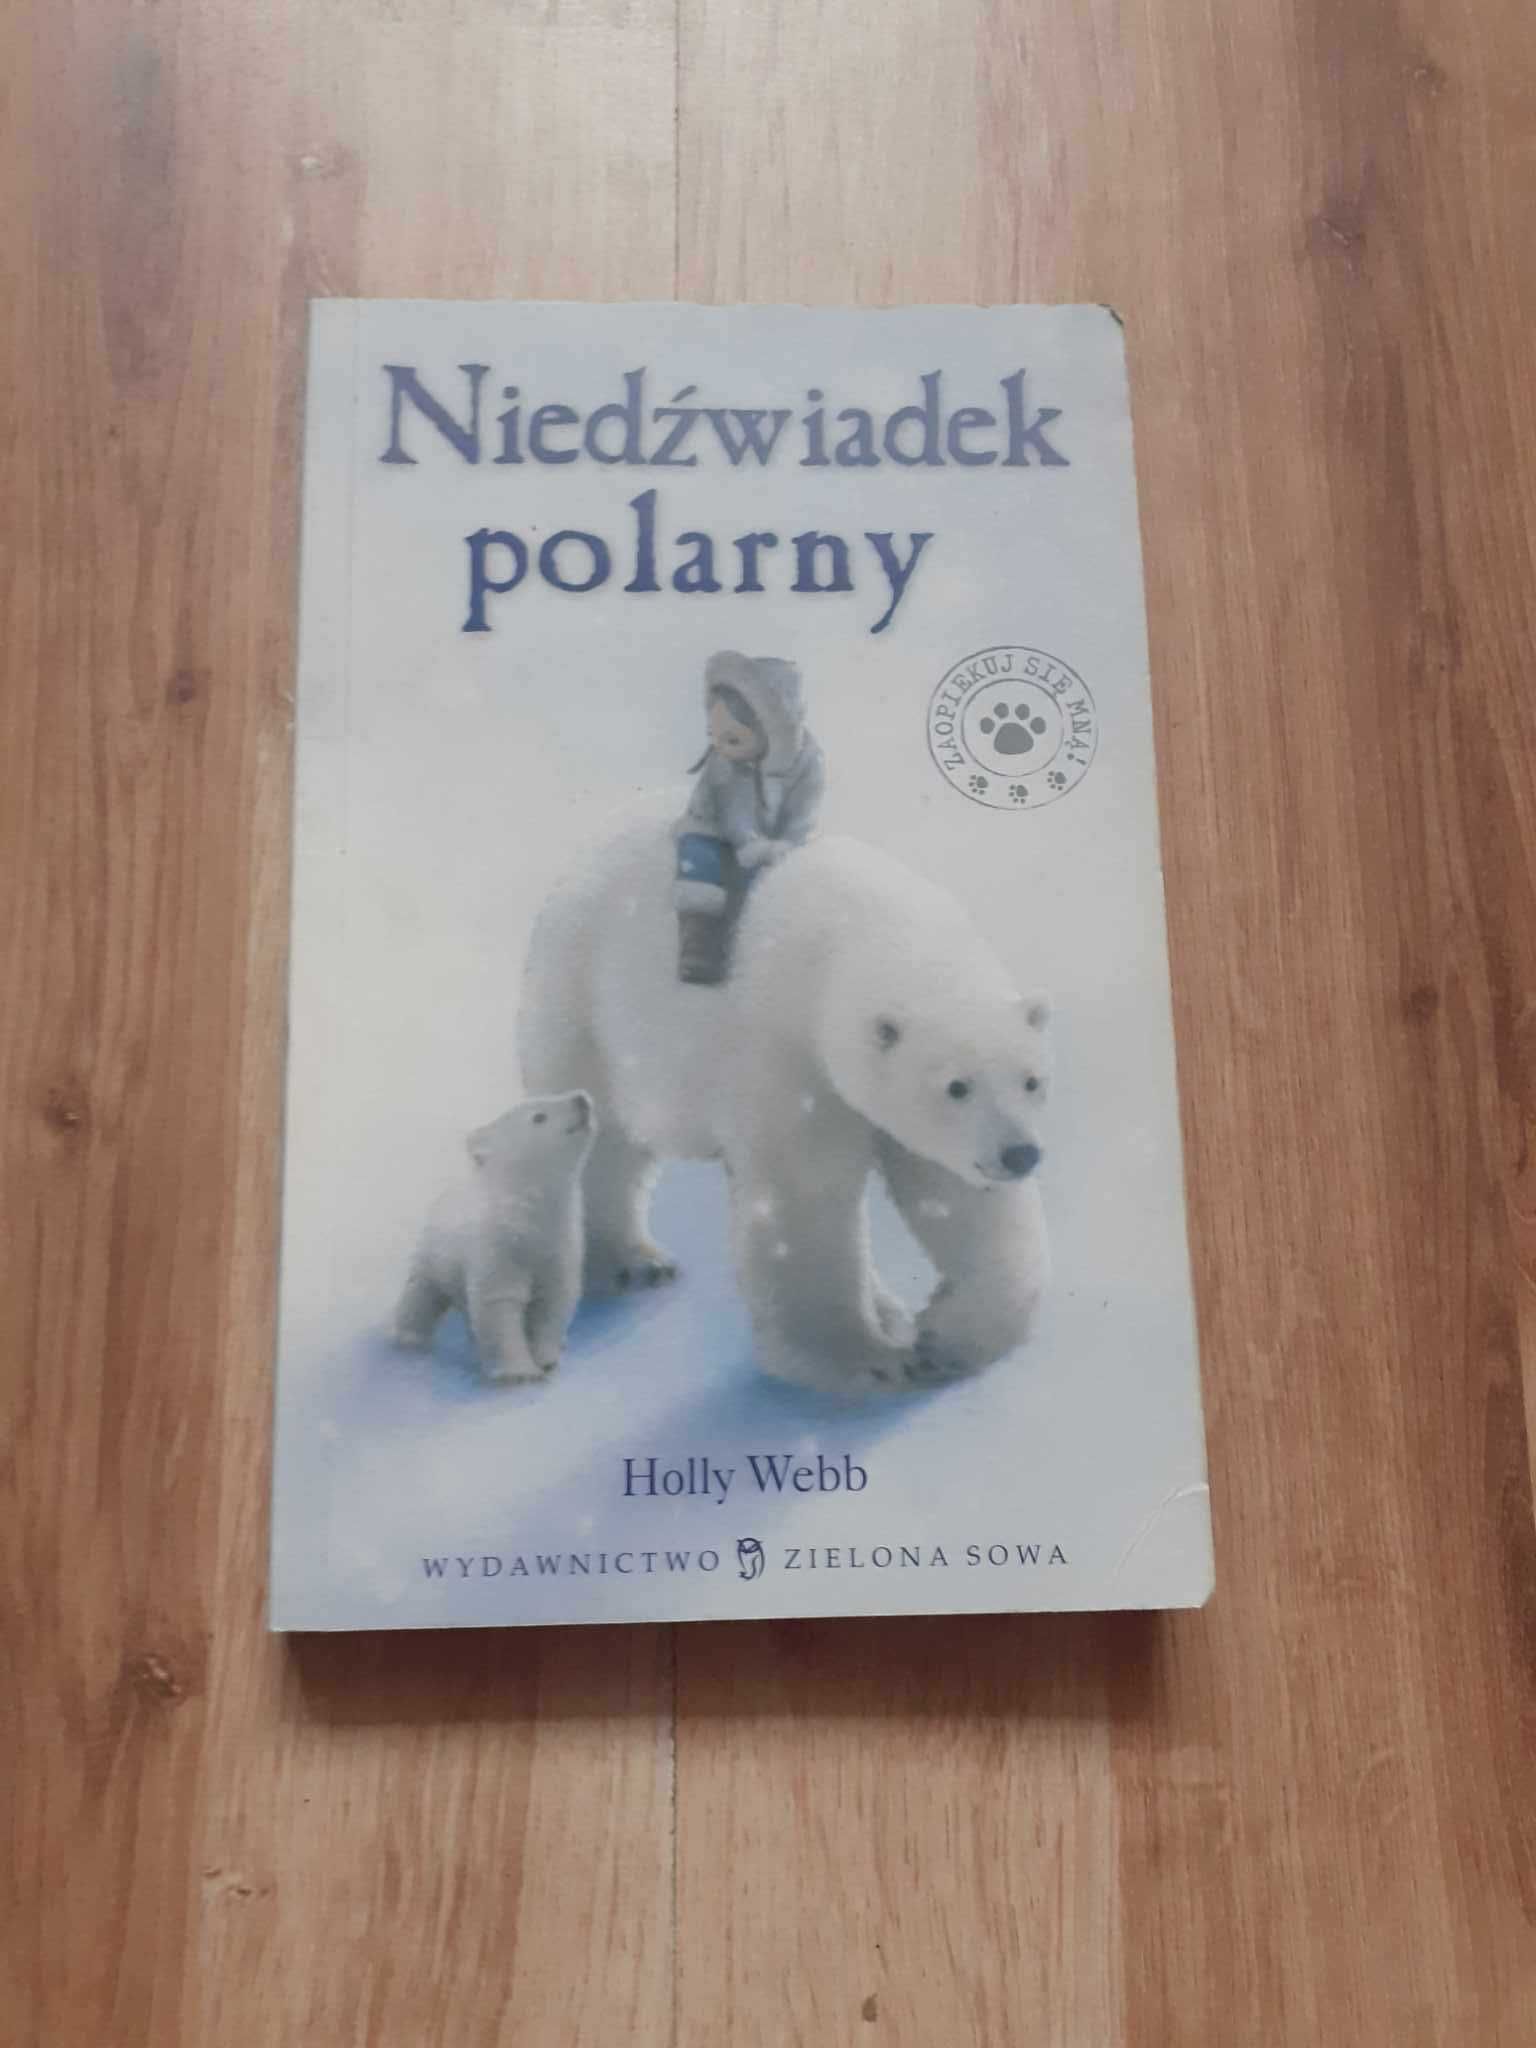 Książki 2 szt.pt. "Kłopoty za rogiem" "Niedźwiadek polarny"